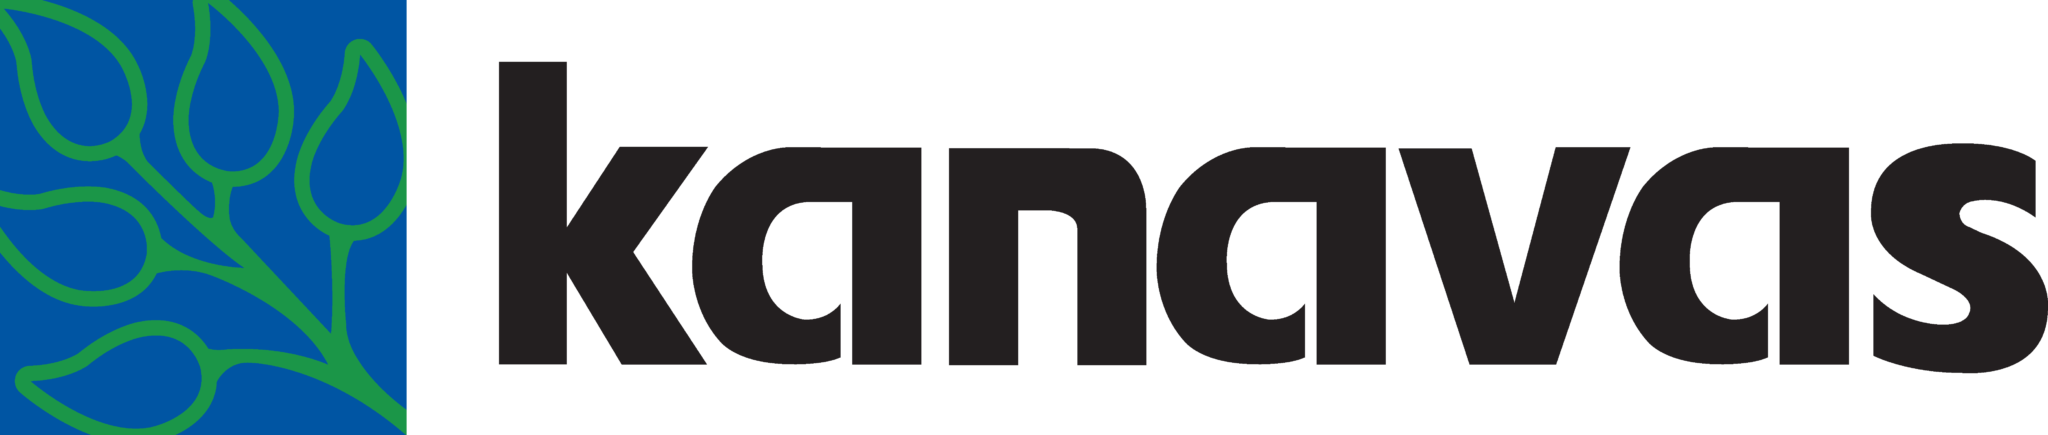 Kanavas Lawn Care logo